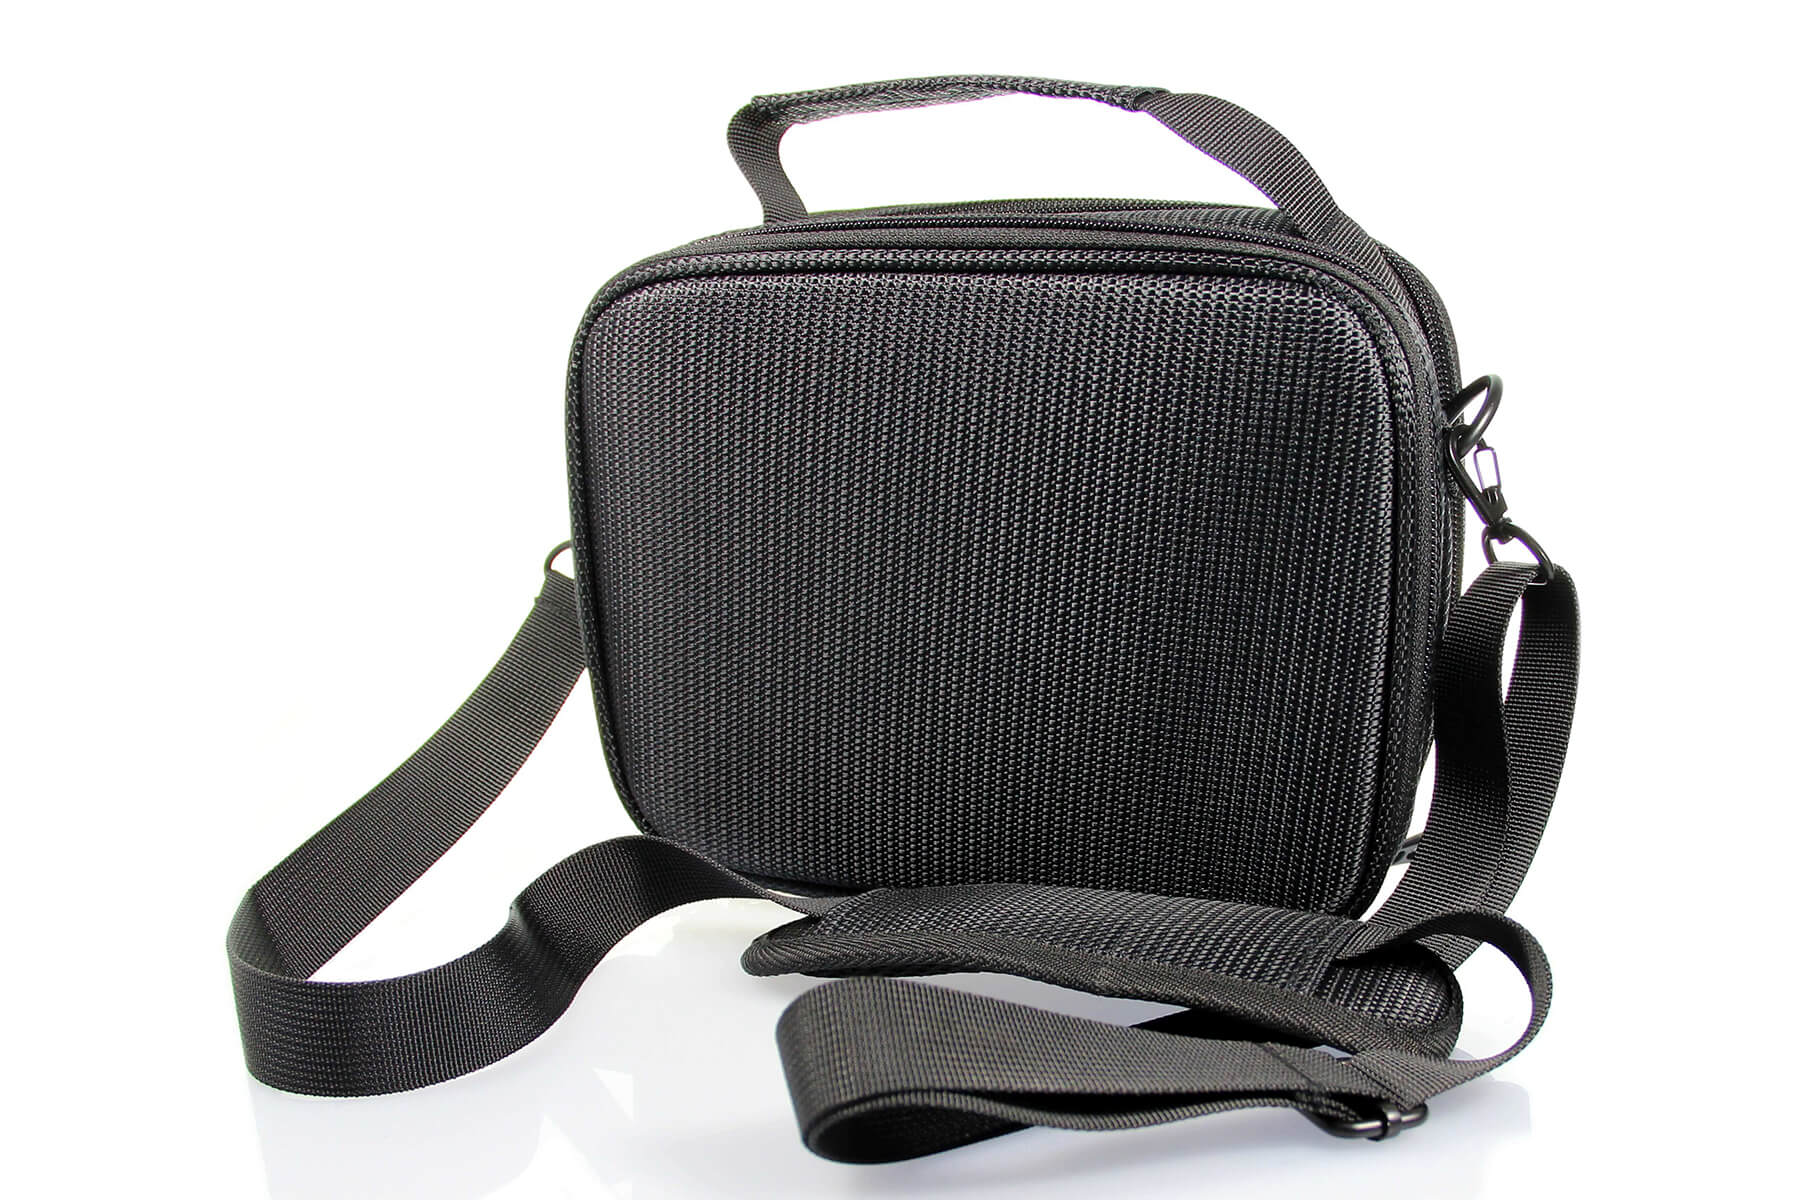 Tasche mit Schulterriemen - E-Case